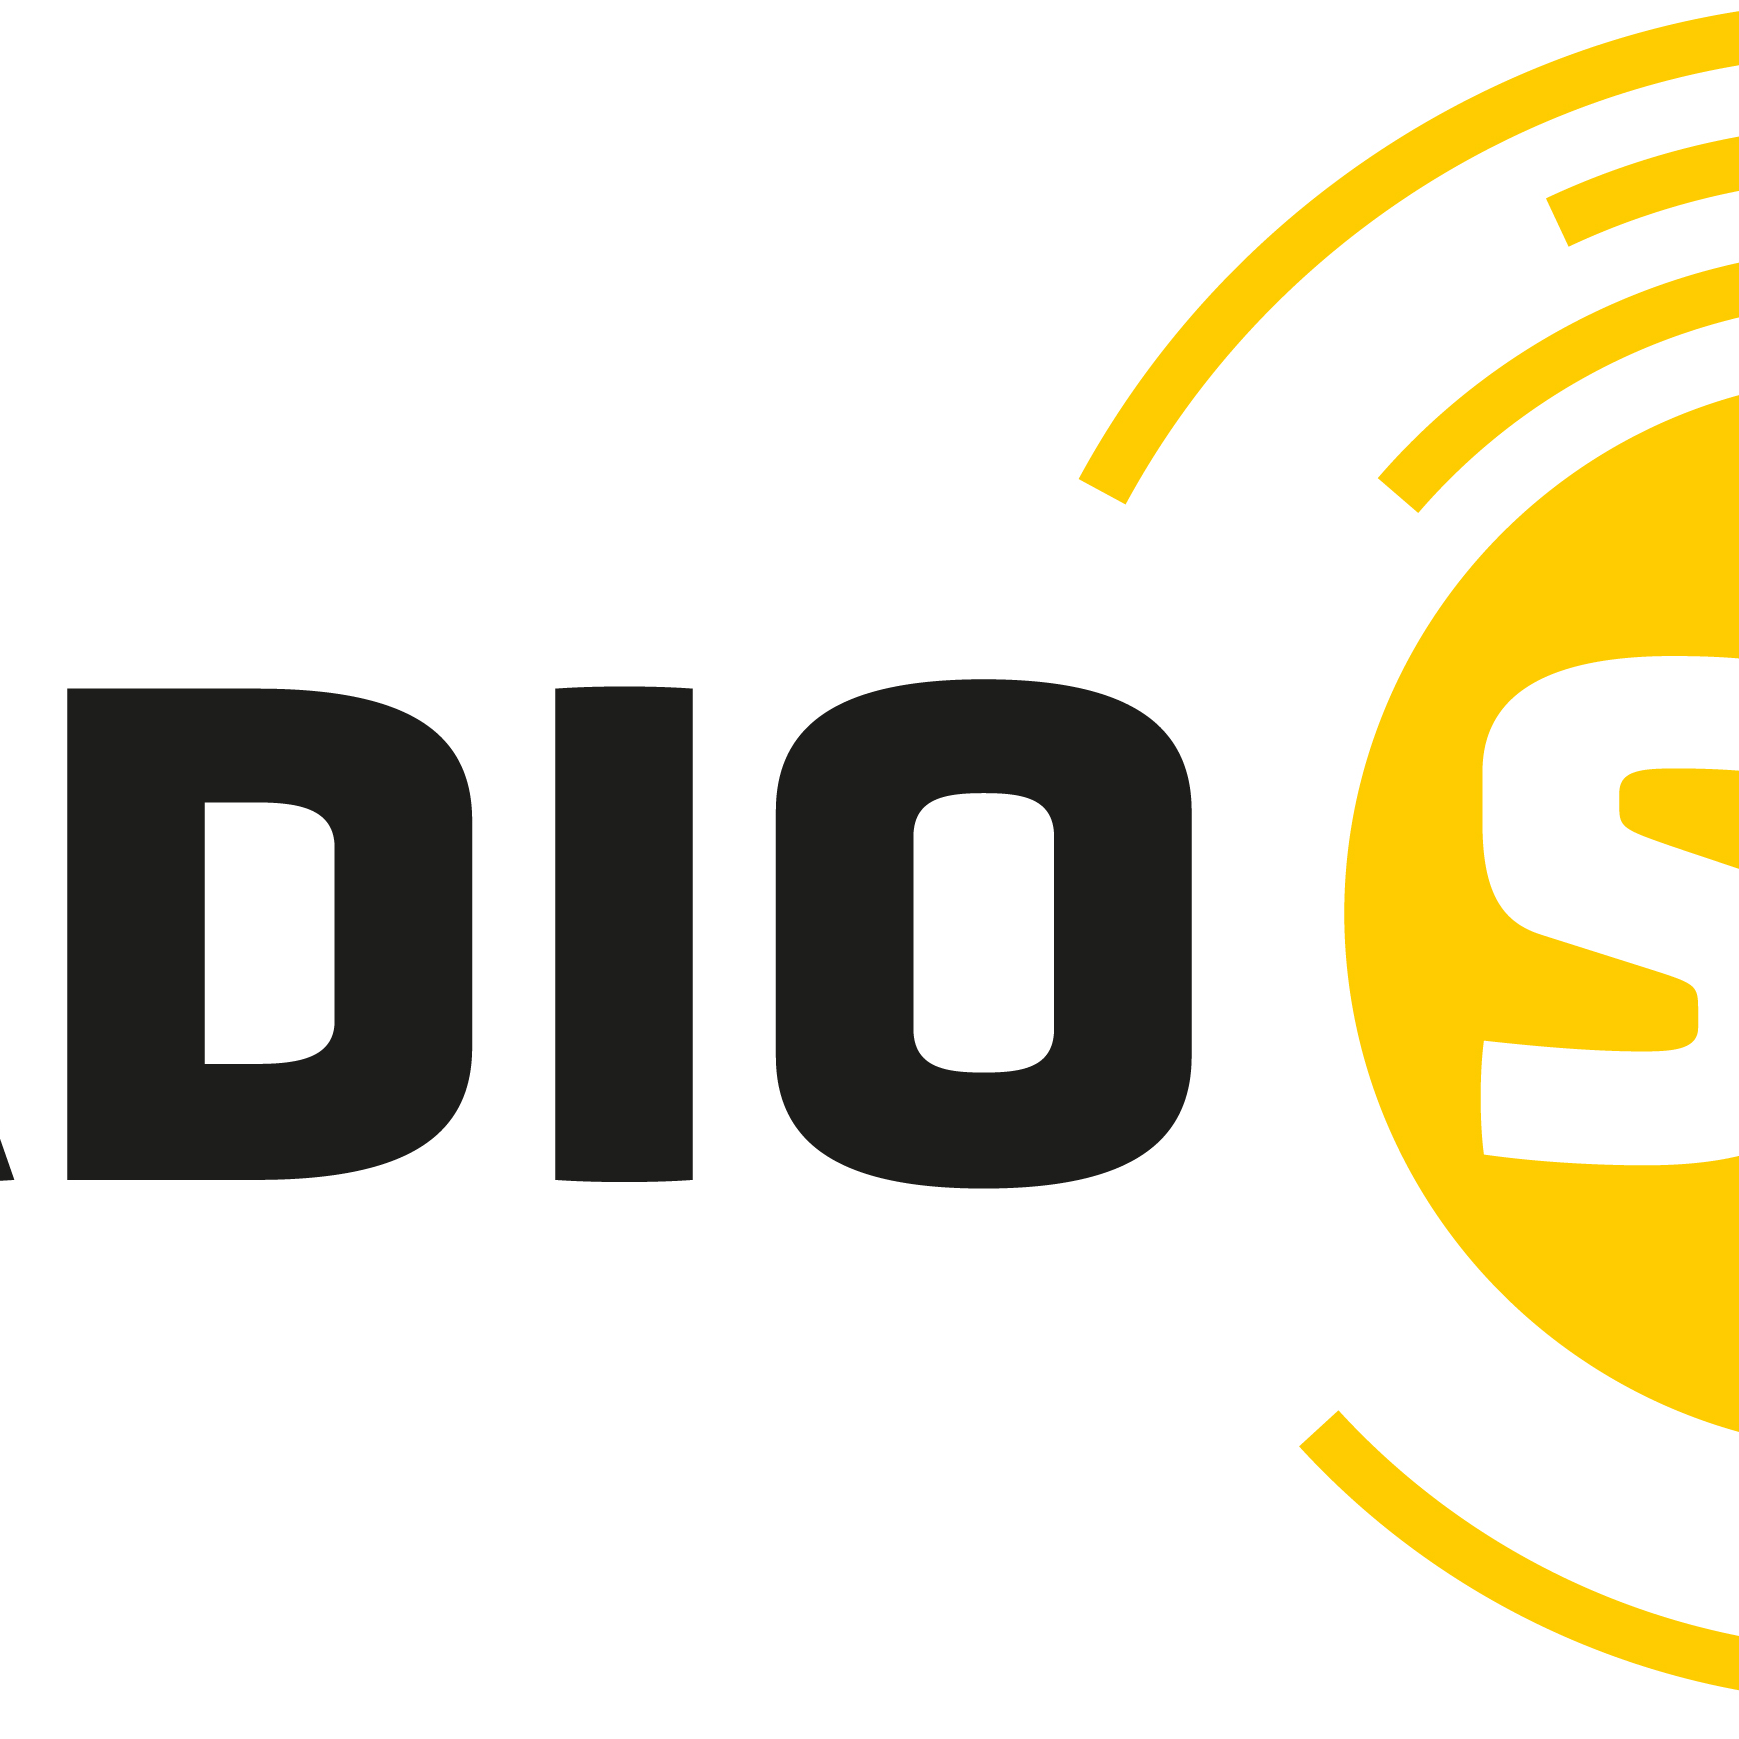 Radio Schouwen-Duiveland